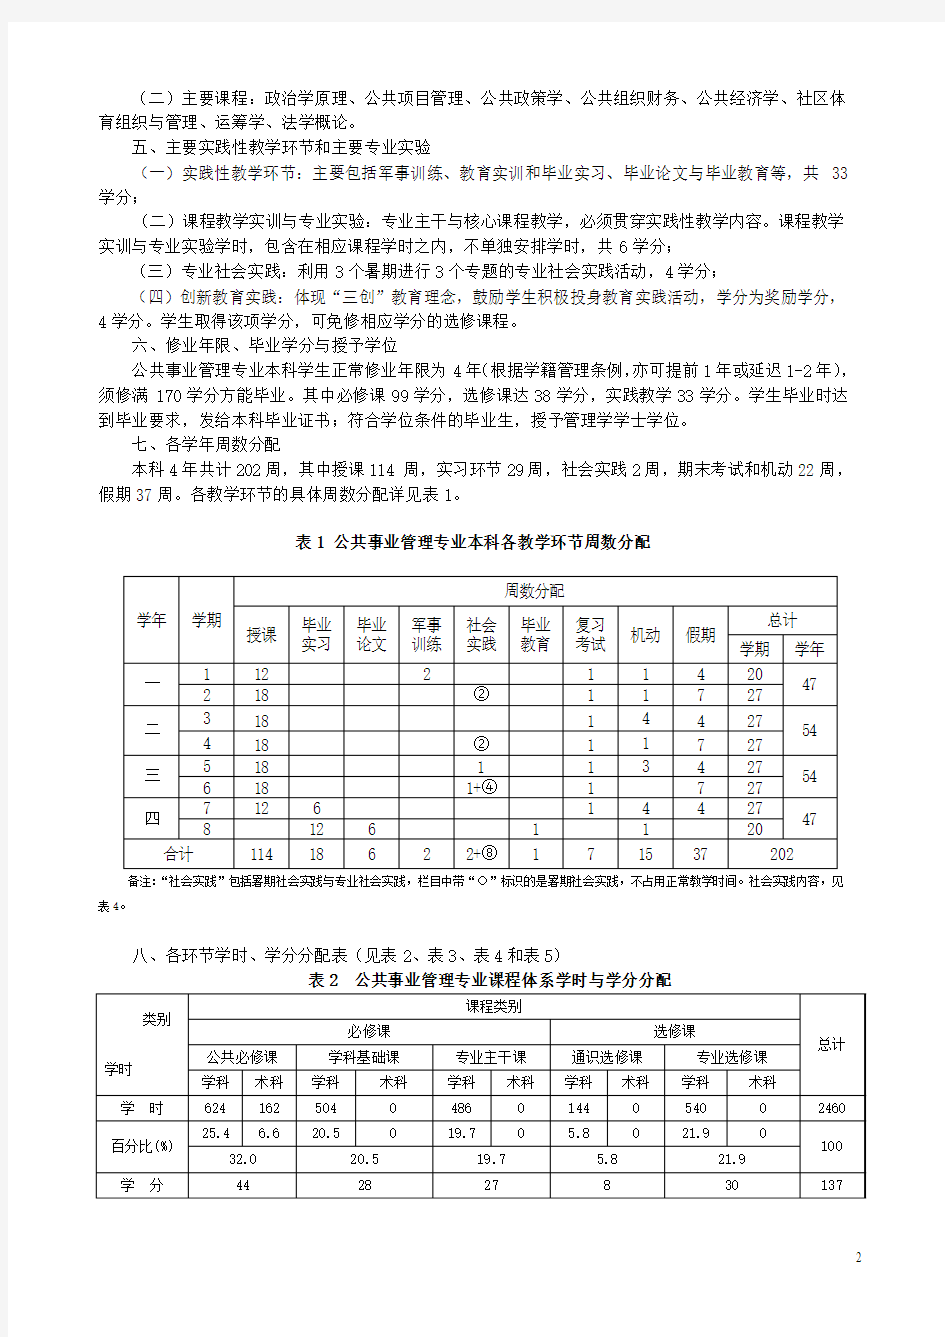 武汉体育学院(2013年修订)公共事业管理专业培养方案